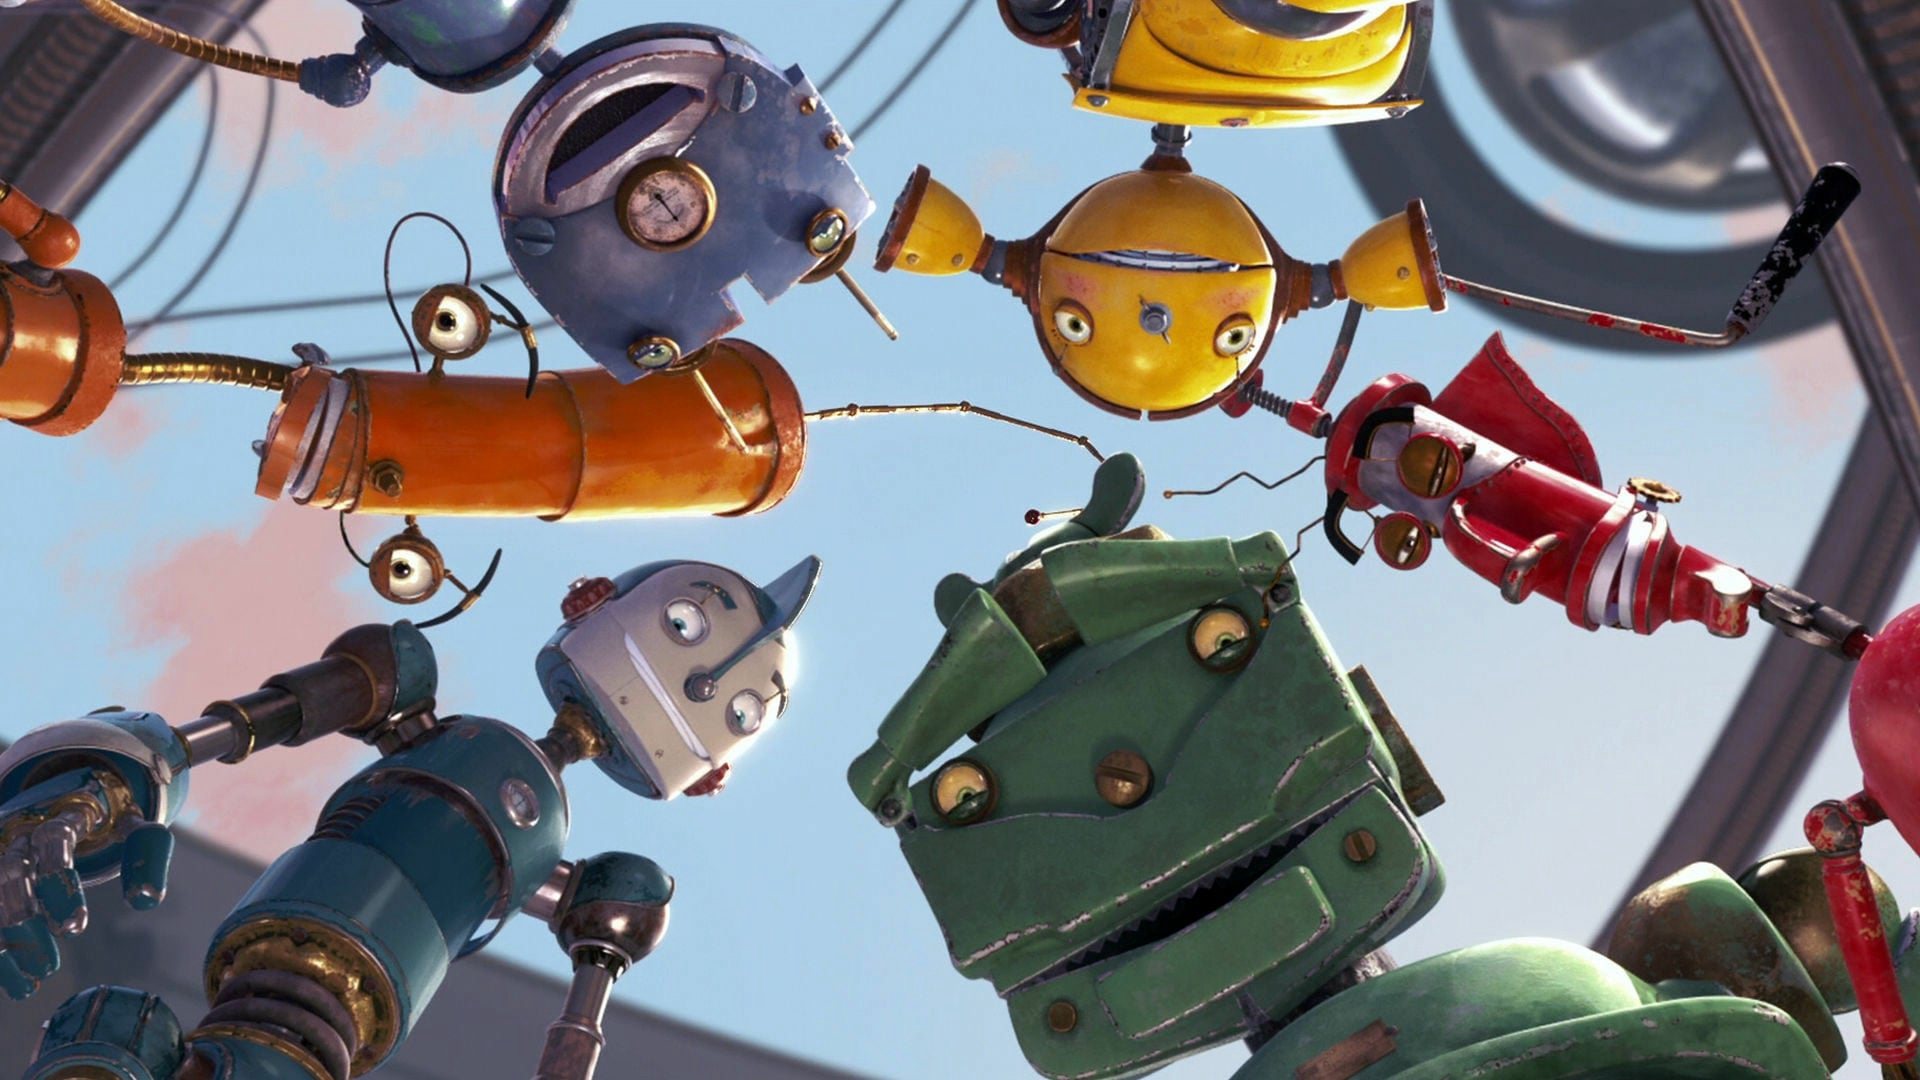 Robots / Robots (2005)